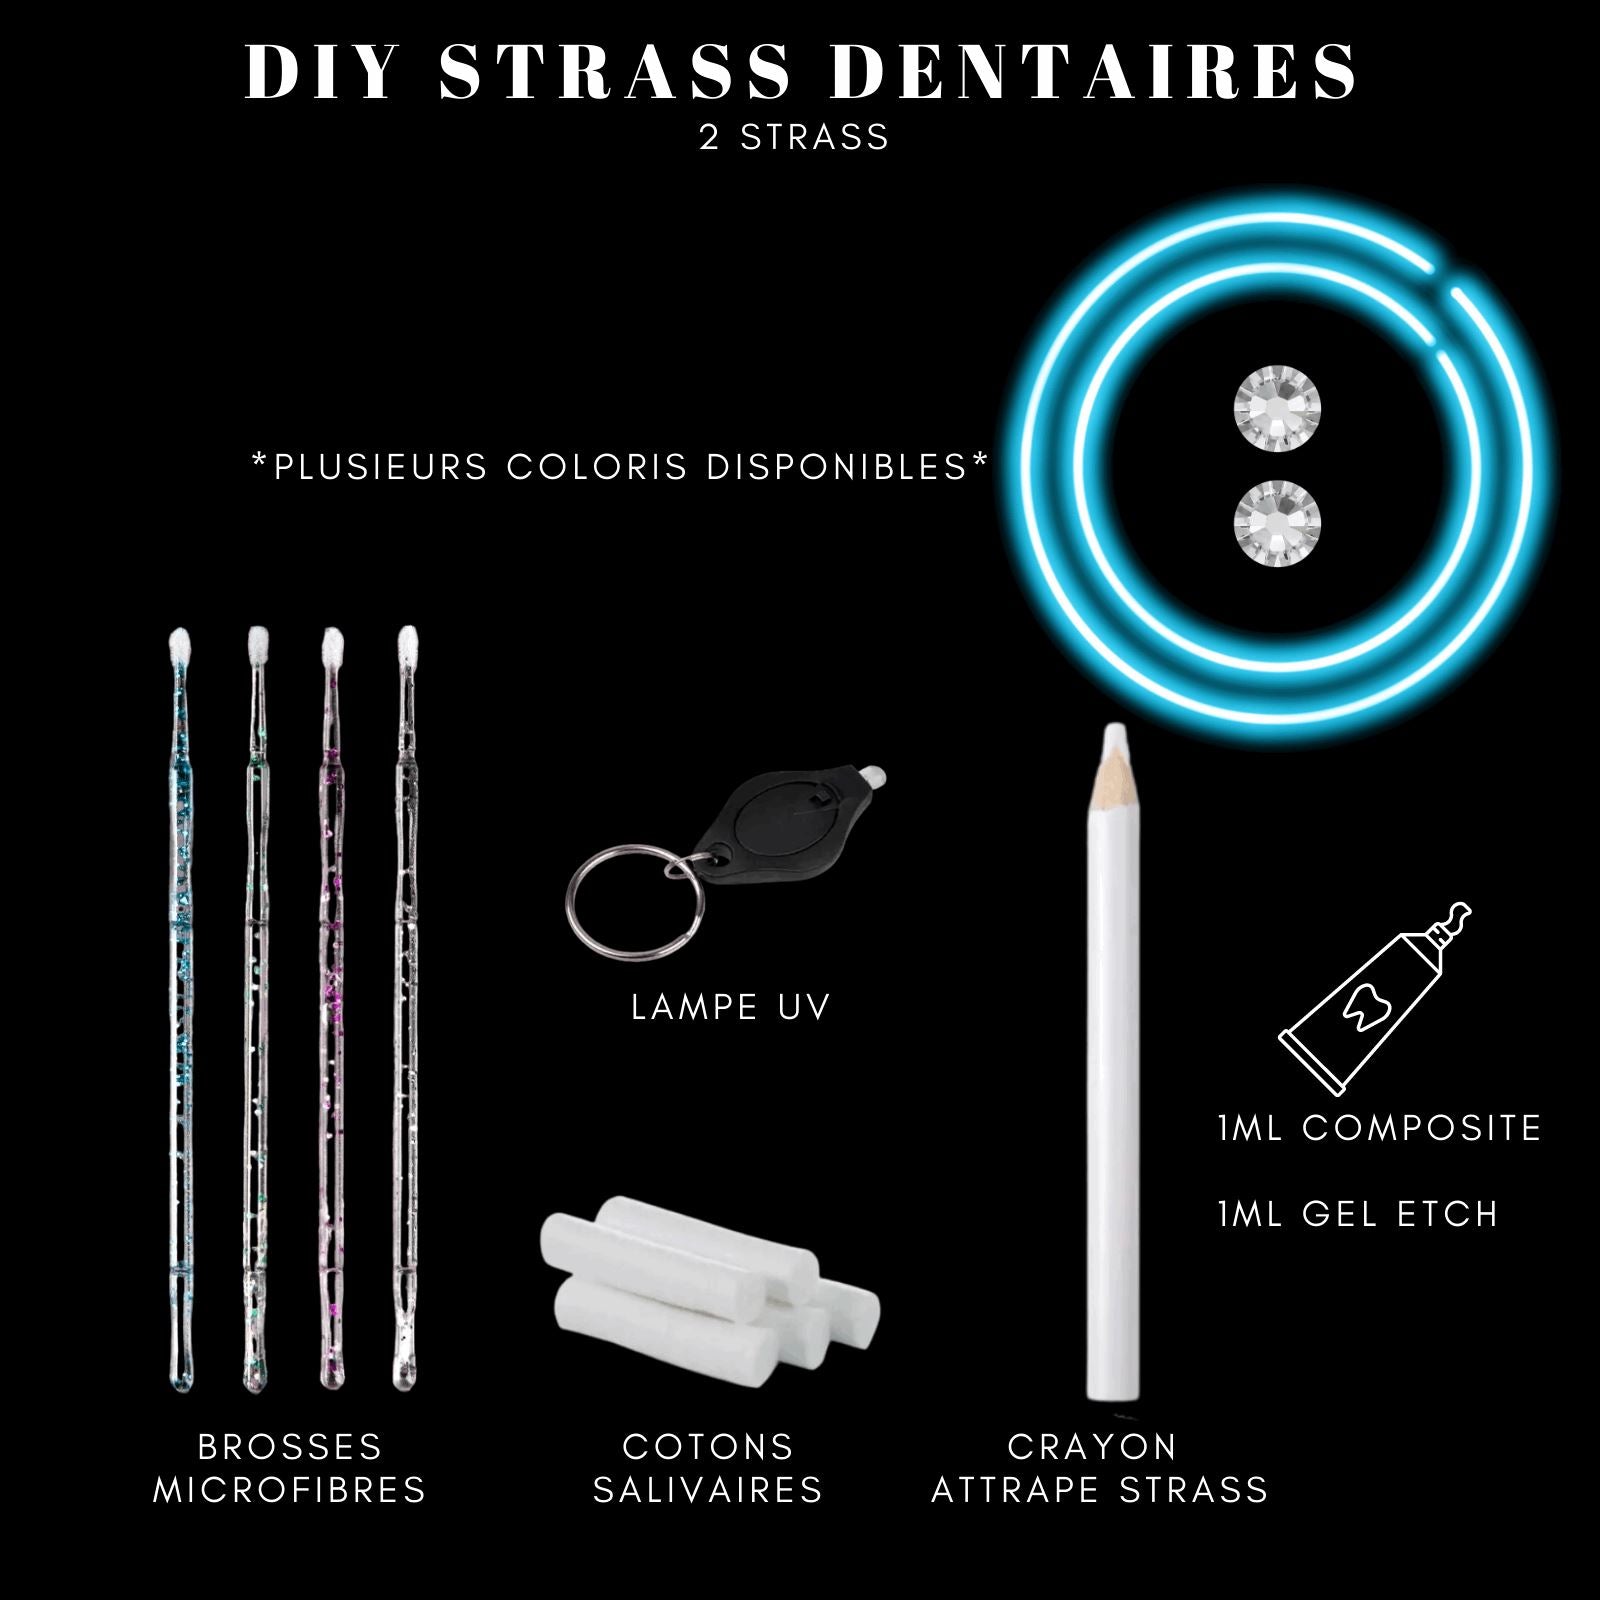 DIY Tooth Gems Kit 2 STRASS - Ton Kit de Pose de strass dentaire Homemade